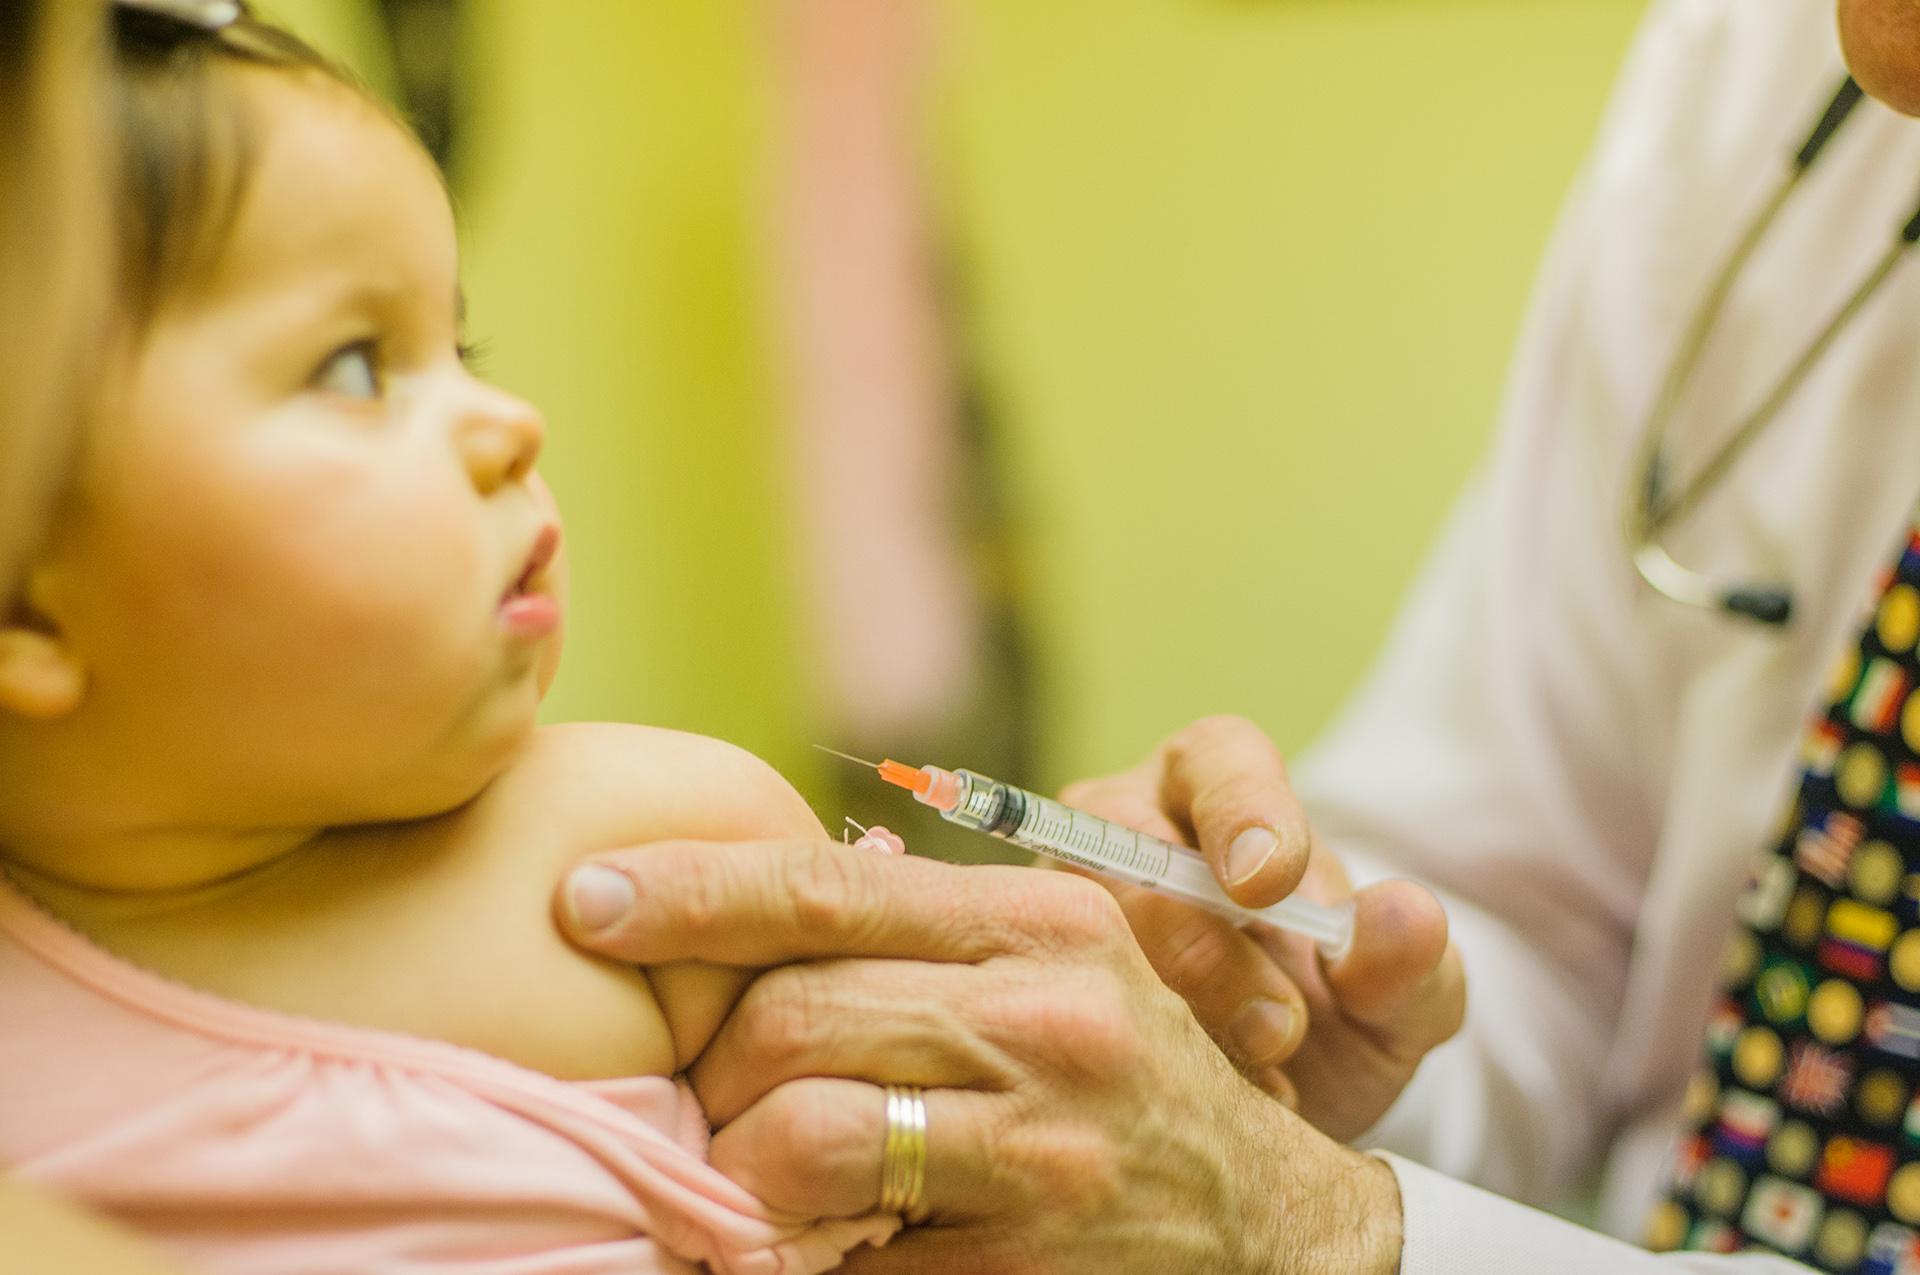 विश्व टीकाकरण सप्ताह: 5 महत्वपूर्ण बातें जो आपको जाननी चाहिए!